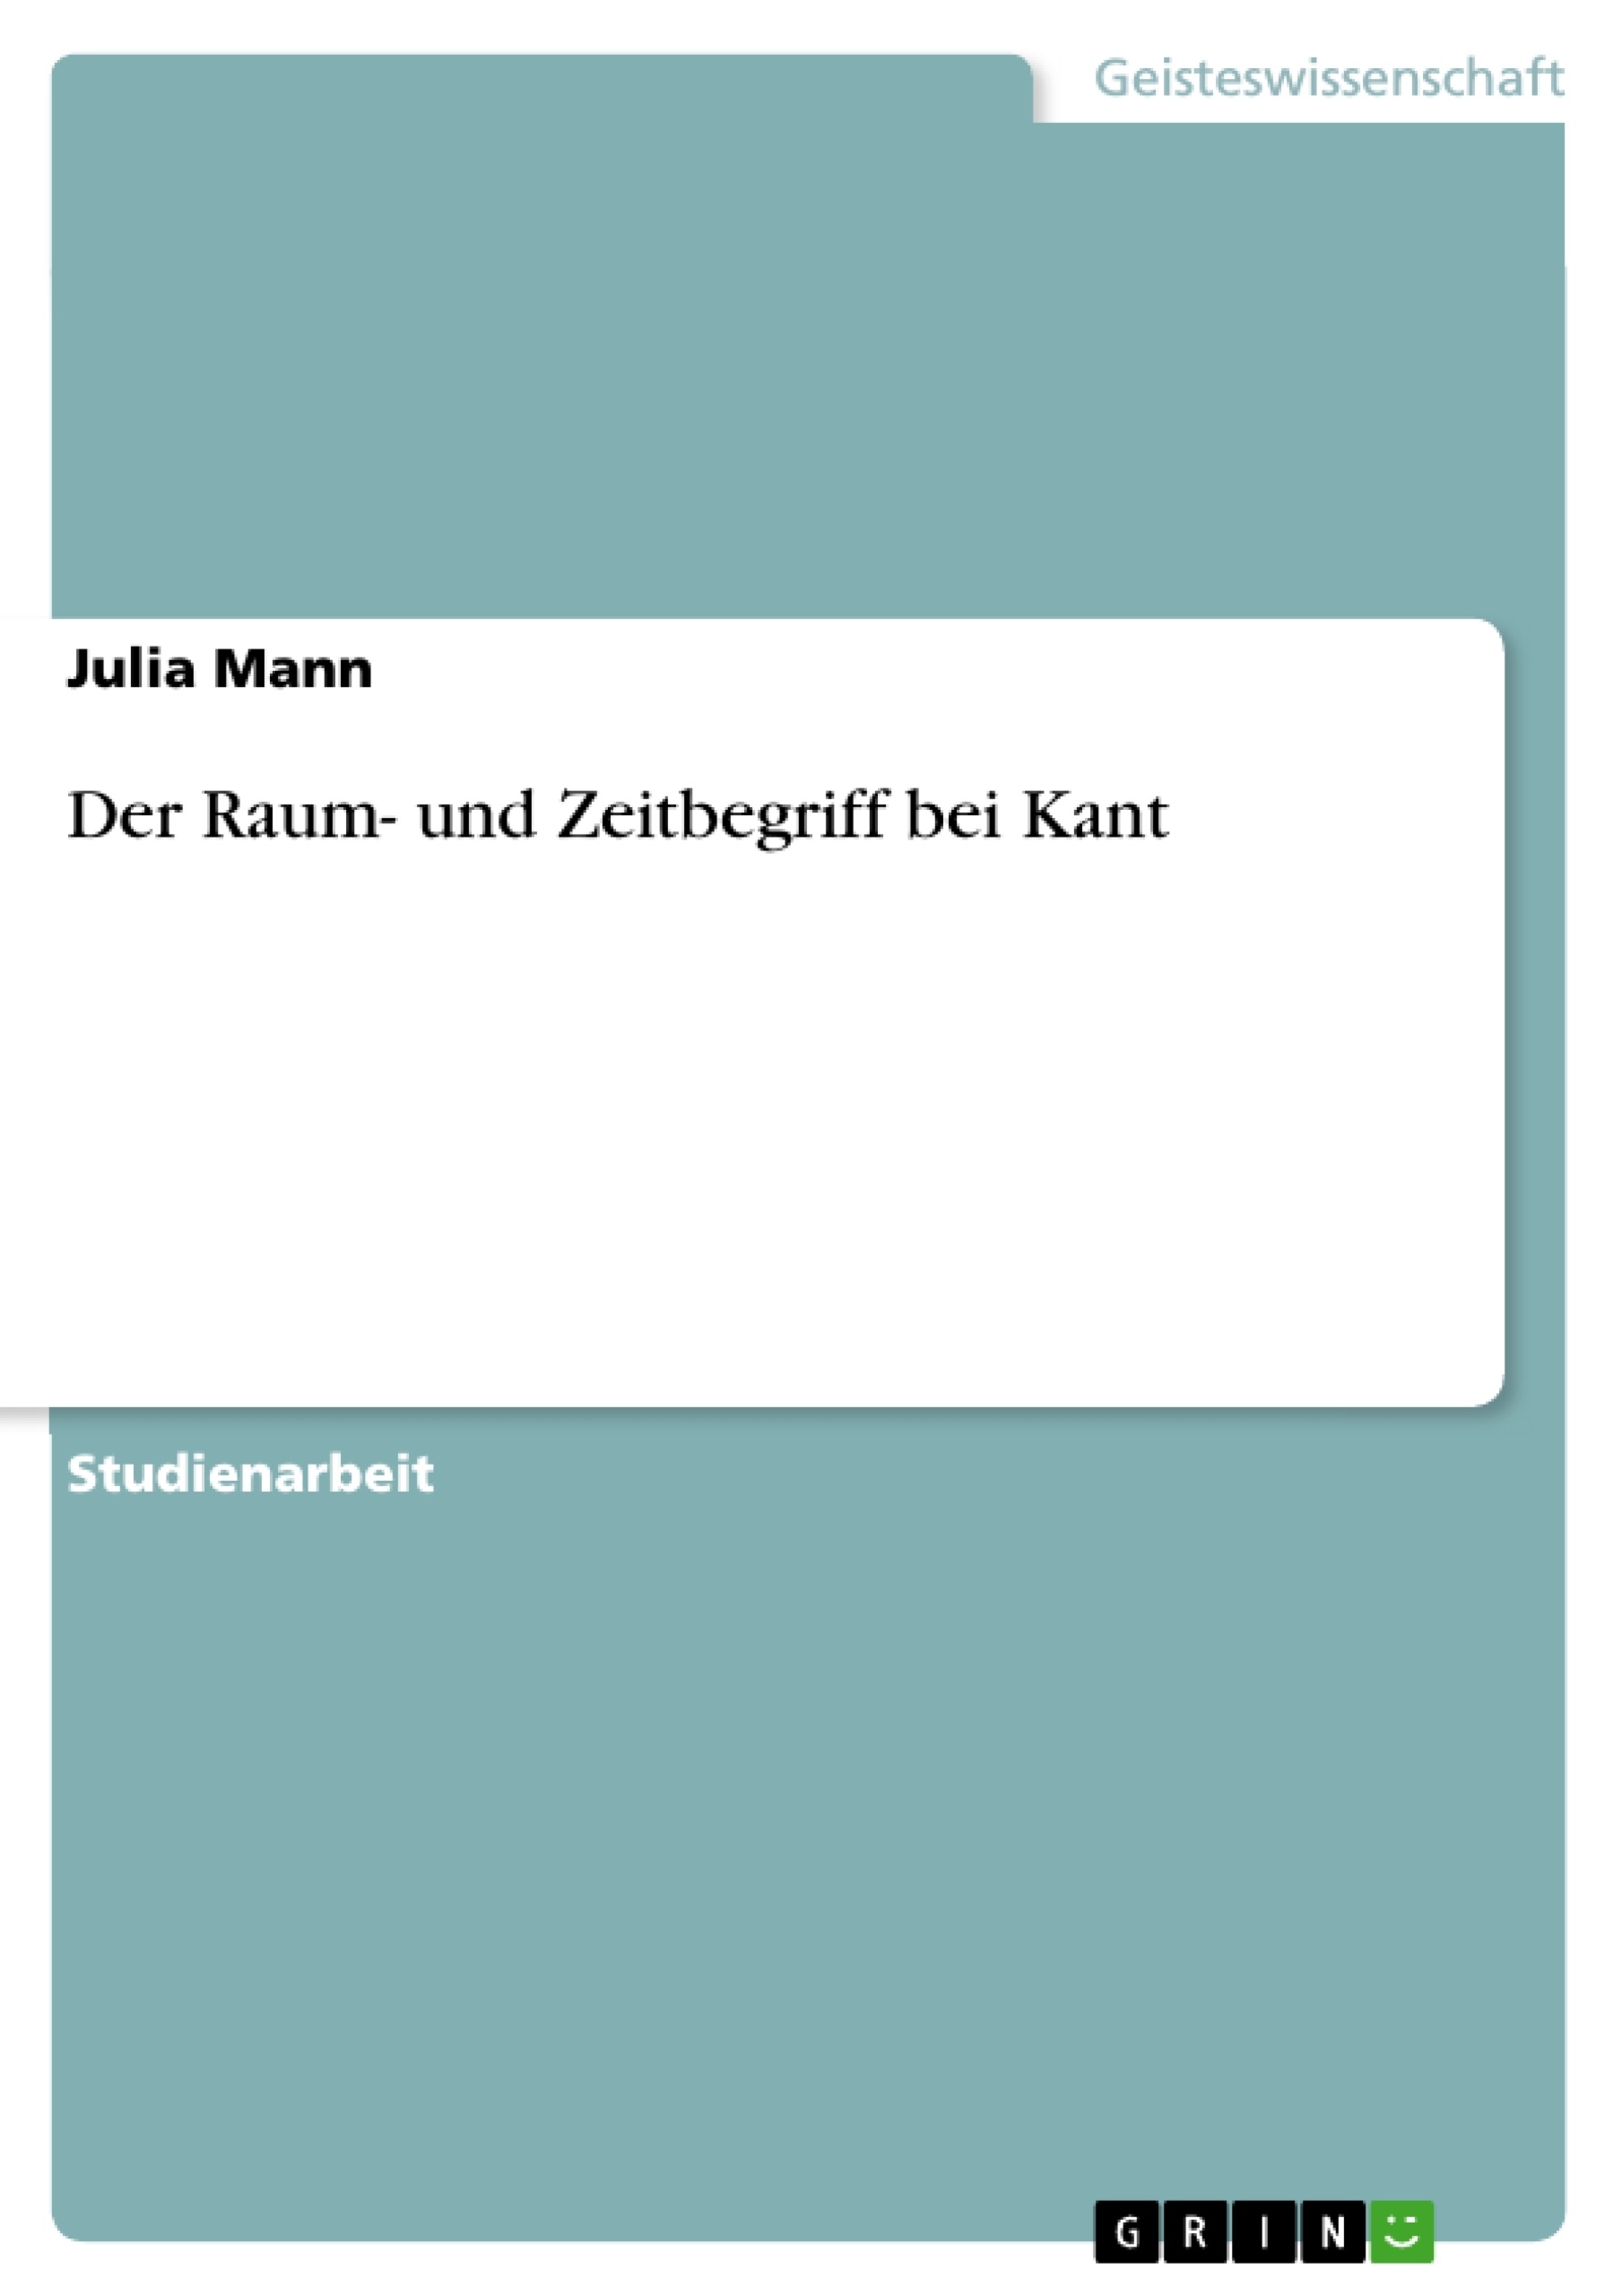 Título: Der Raum- und Zeitbegriff bei Kant